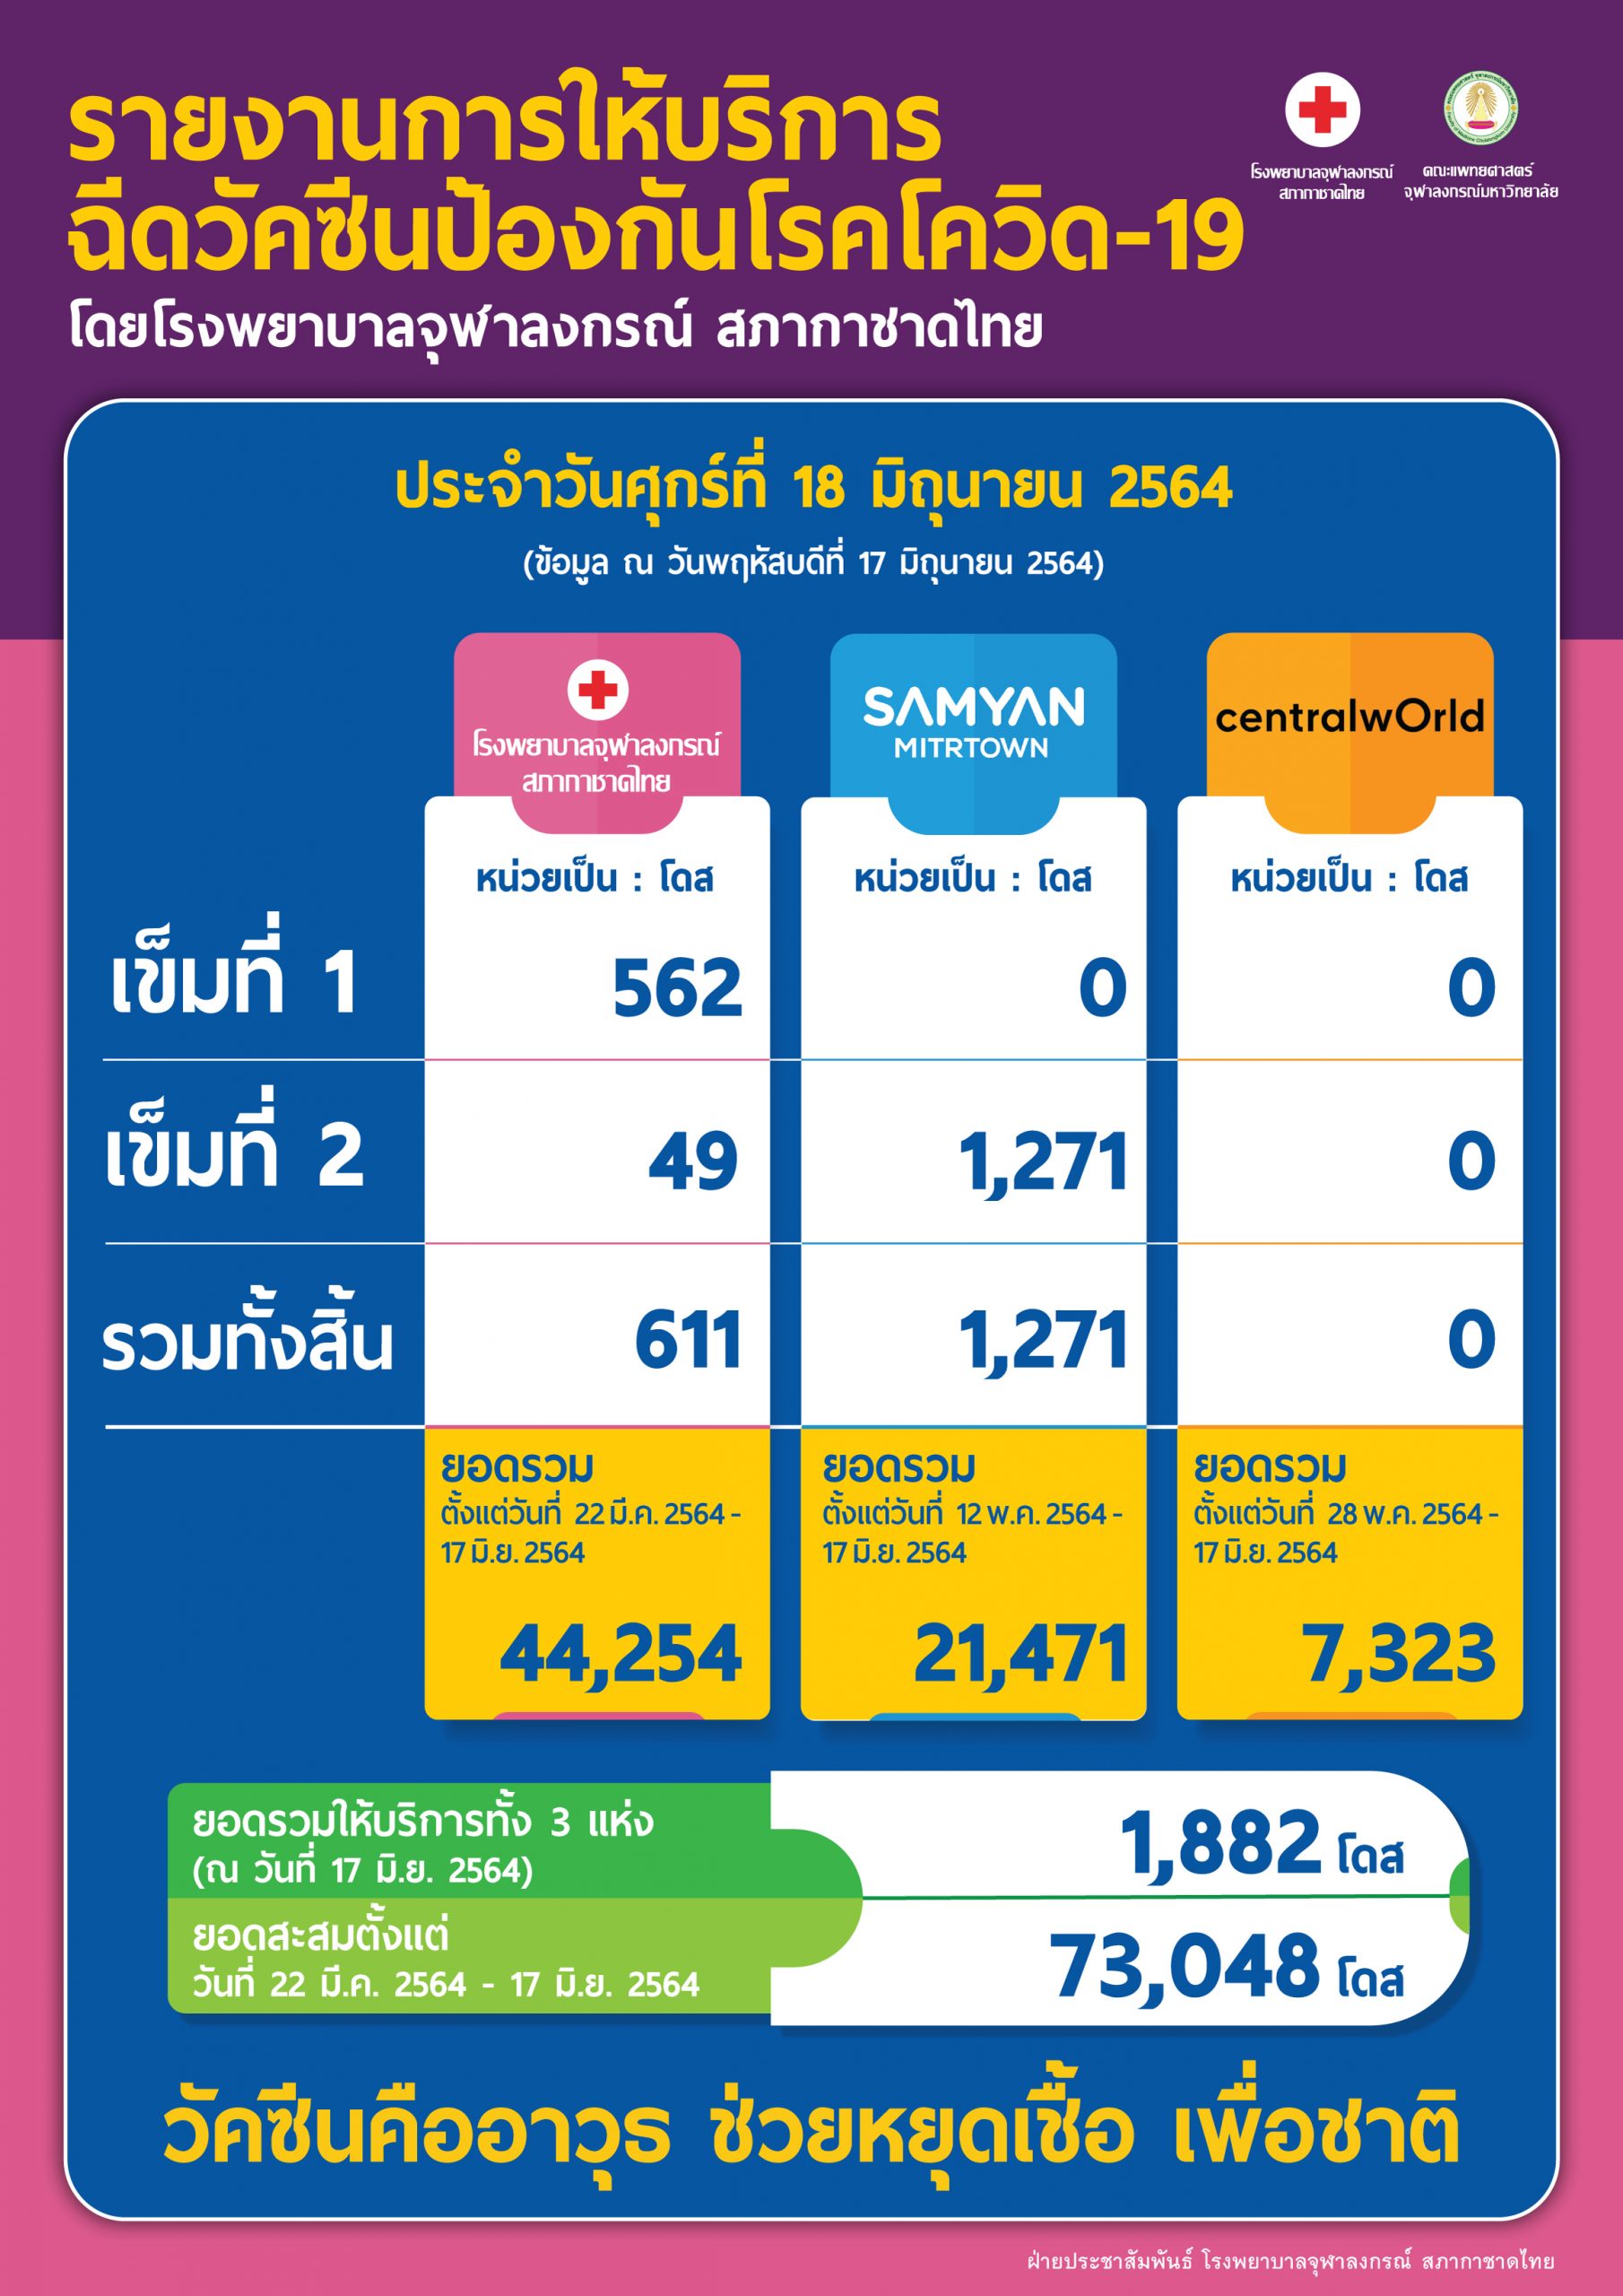 รายงานการให้บริการฉีดวัคซีนป้องกันโรคโควิด-19 โดยโรงพยาบาลจุฬาลงกรณ์ สภากาชาดไทย ประจำวันศุกร์ที่ 18 มิถุนายน 2564